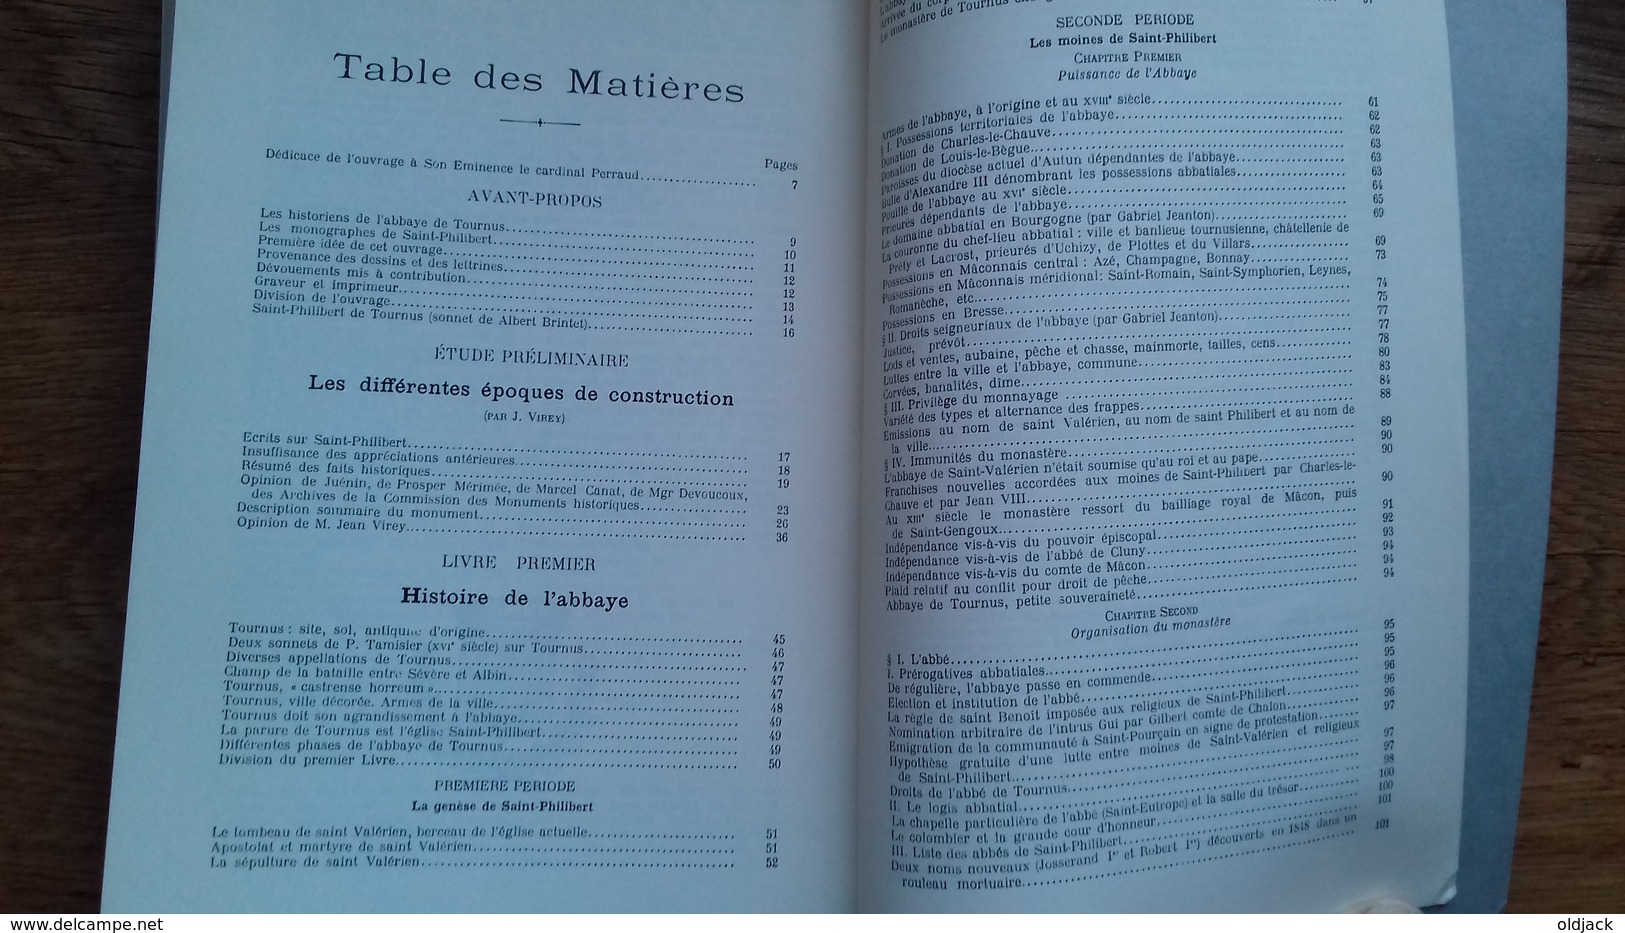 Henri CURE "Saint-Philibert de TOURNUS".Guide historique et descriptif de l'abbaye.1984(col12d)